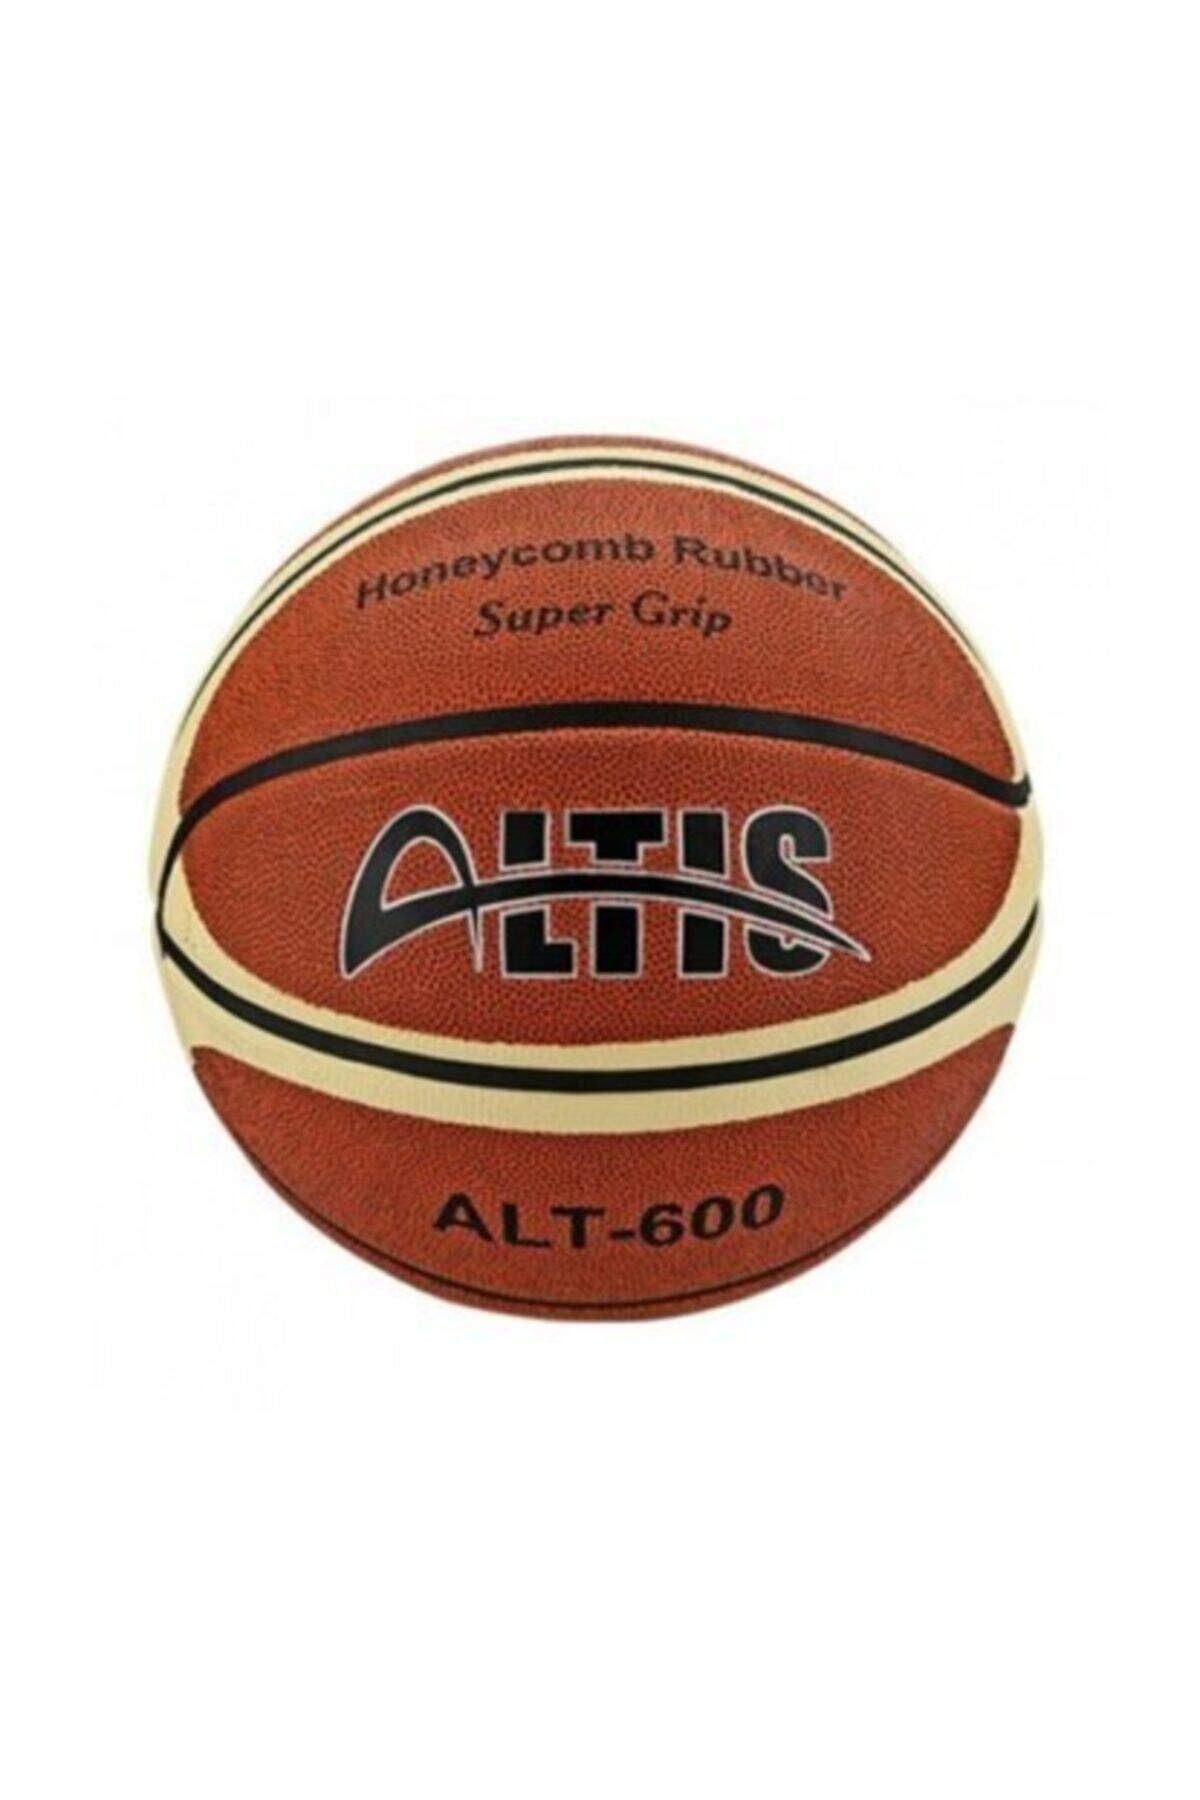 ALTIS Alt-600 Basketbol Topu